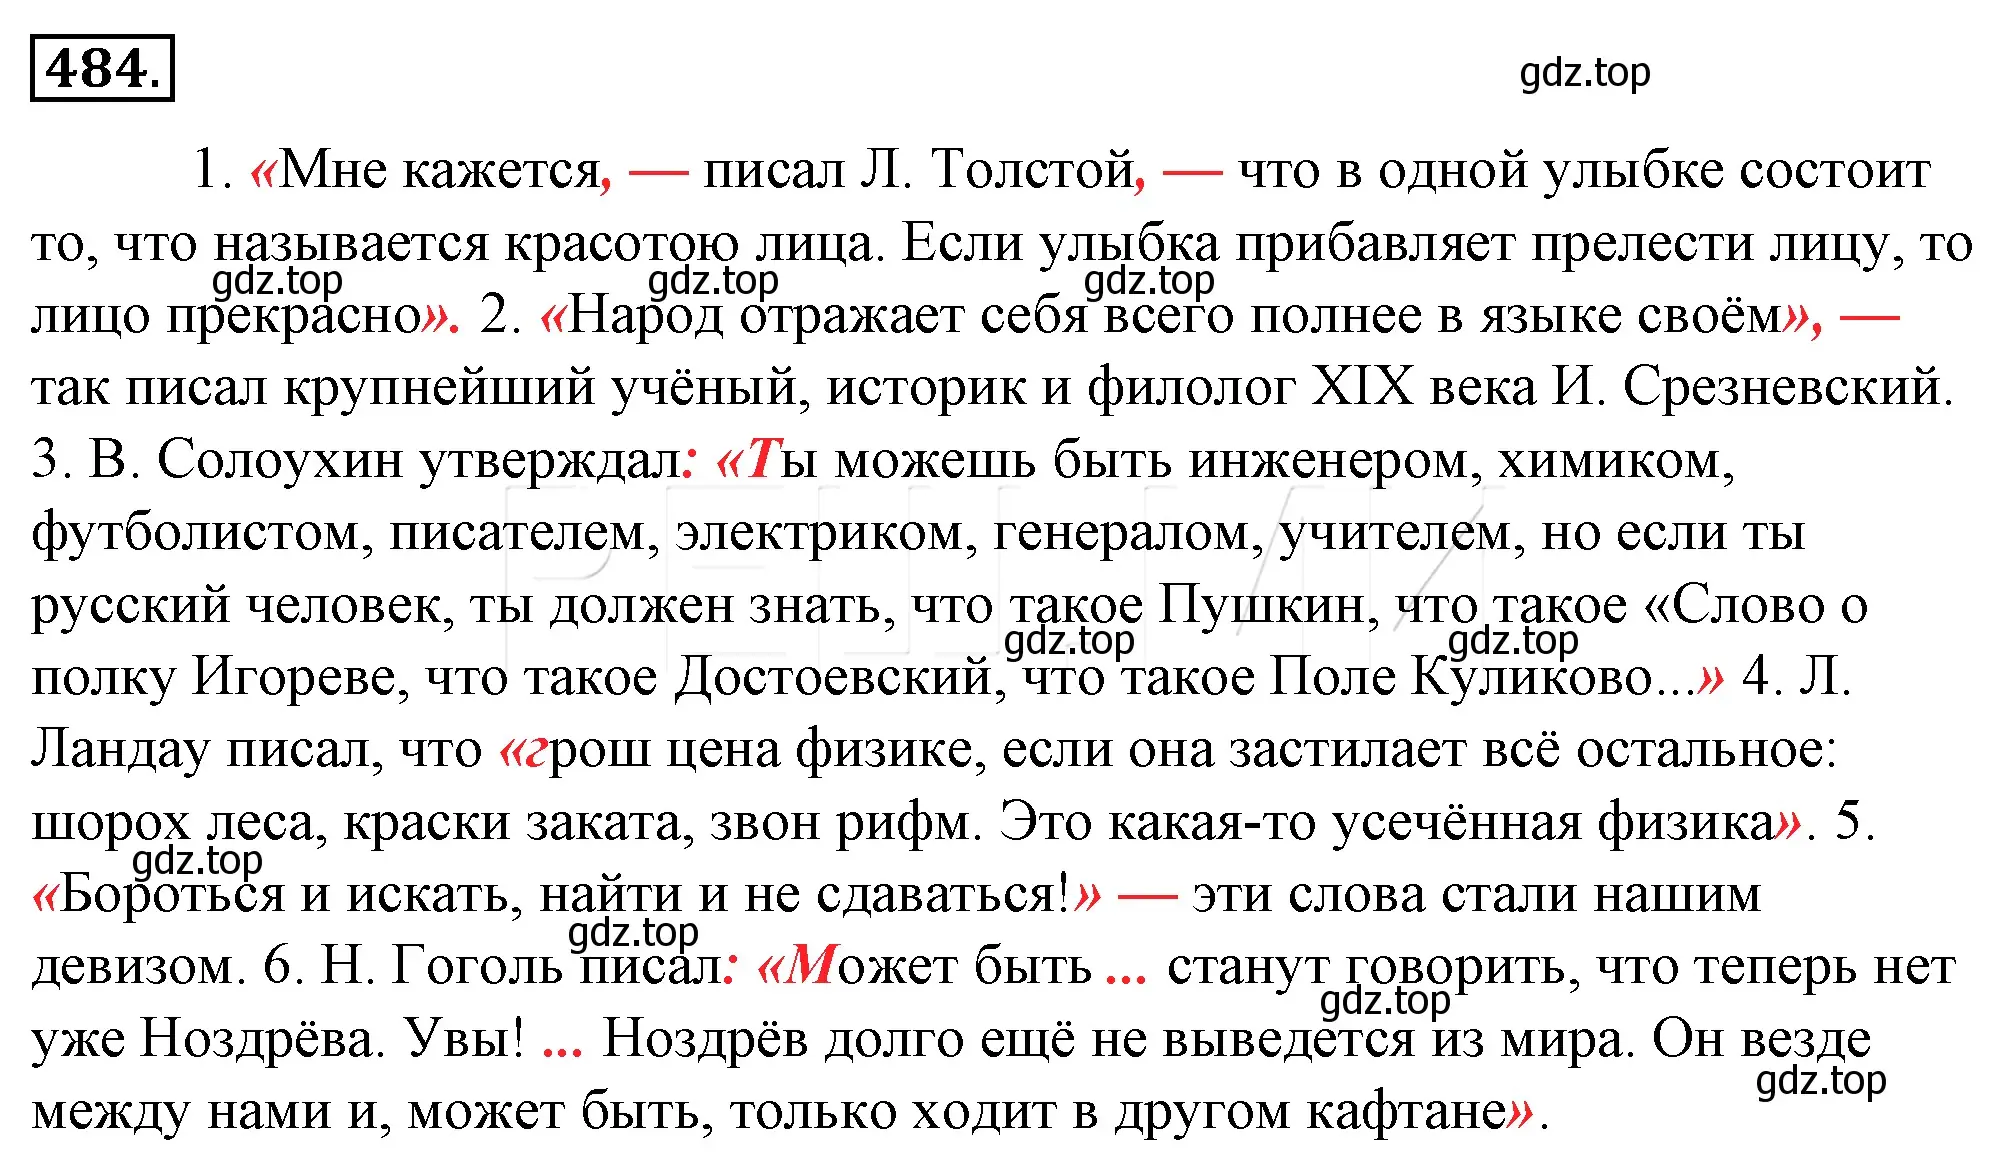 Решение 4. номер 149 (страница 209) гдз по русскому языку 10-11 класс Гольцова, Шамшин, учебник 2 часть